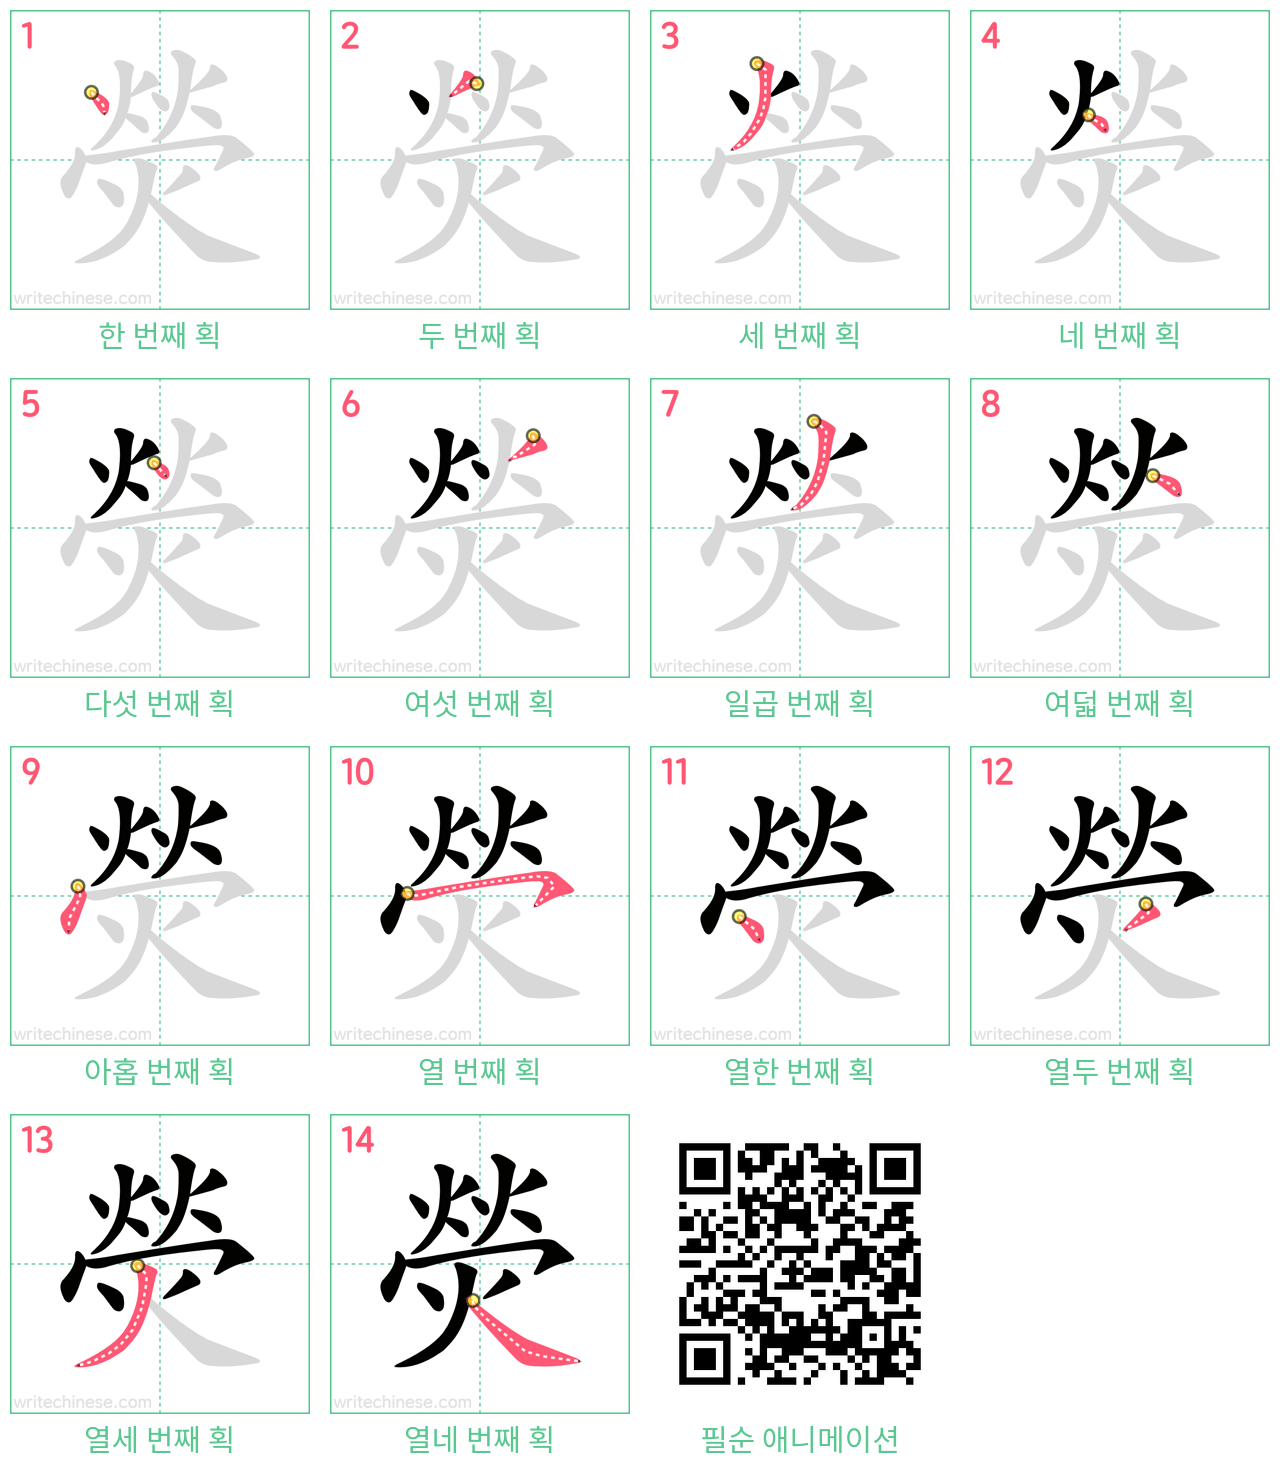 熒 step-by-step stroke order diagrams